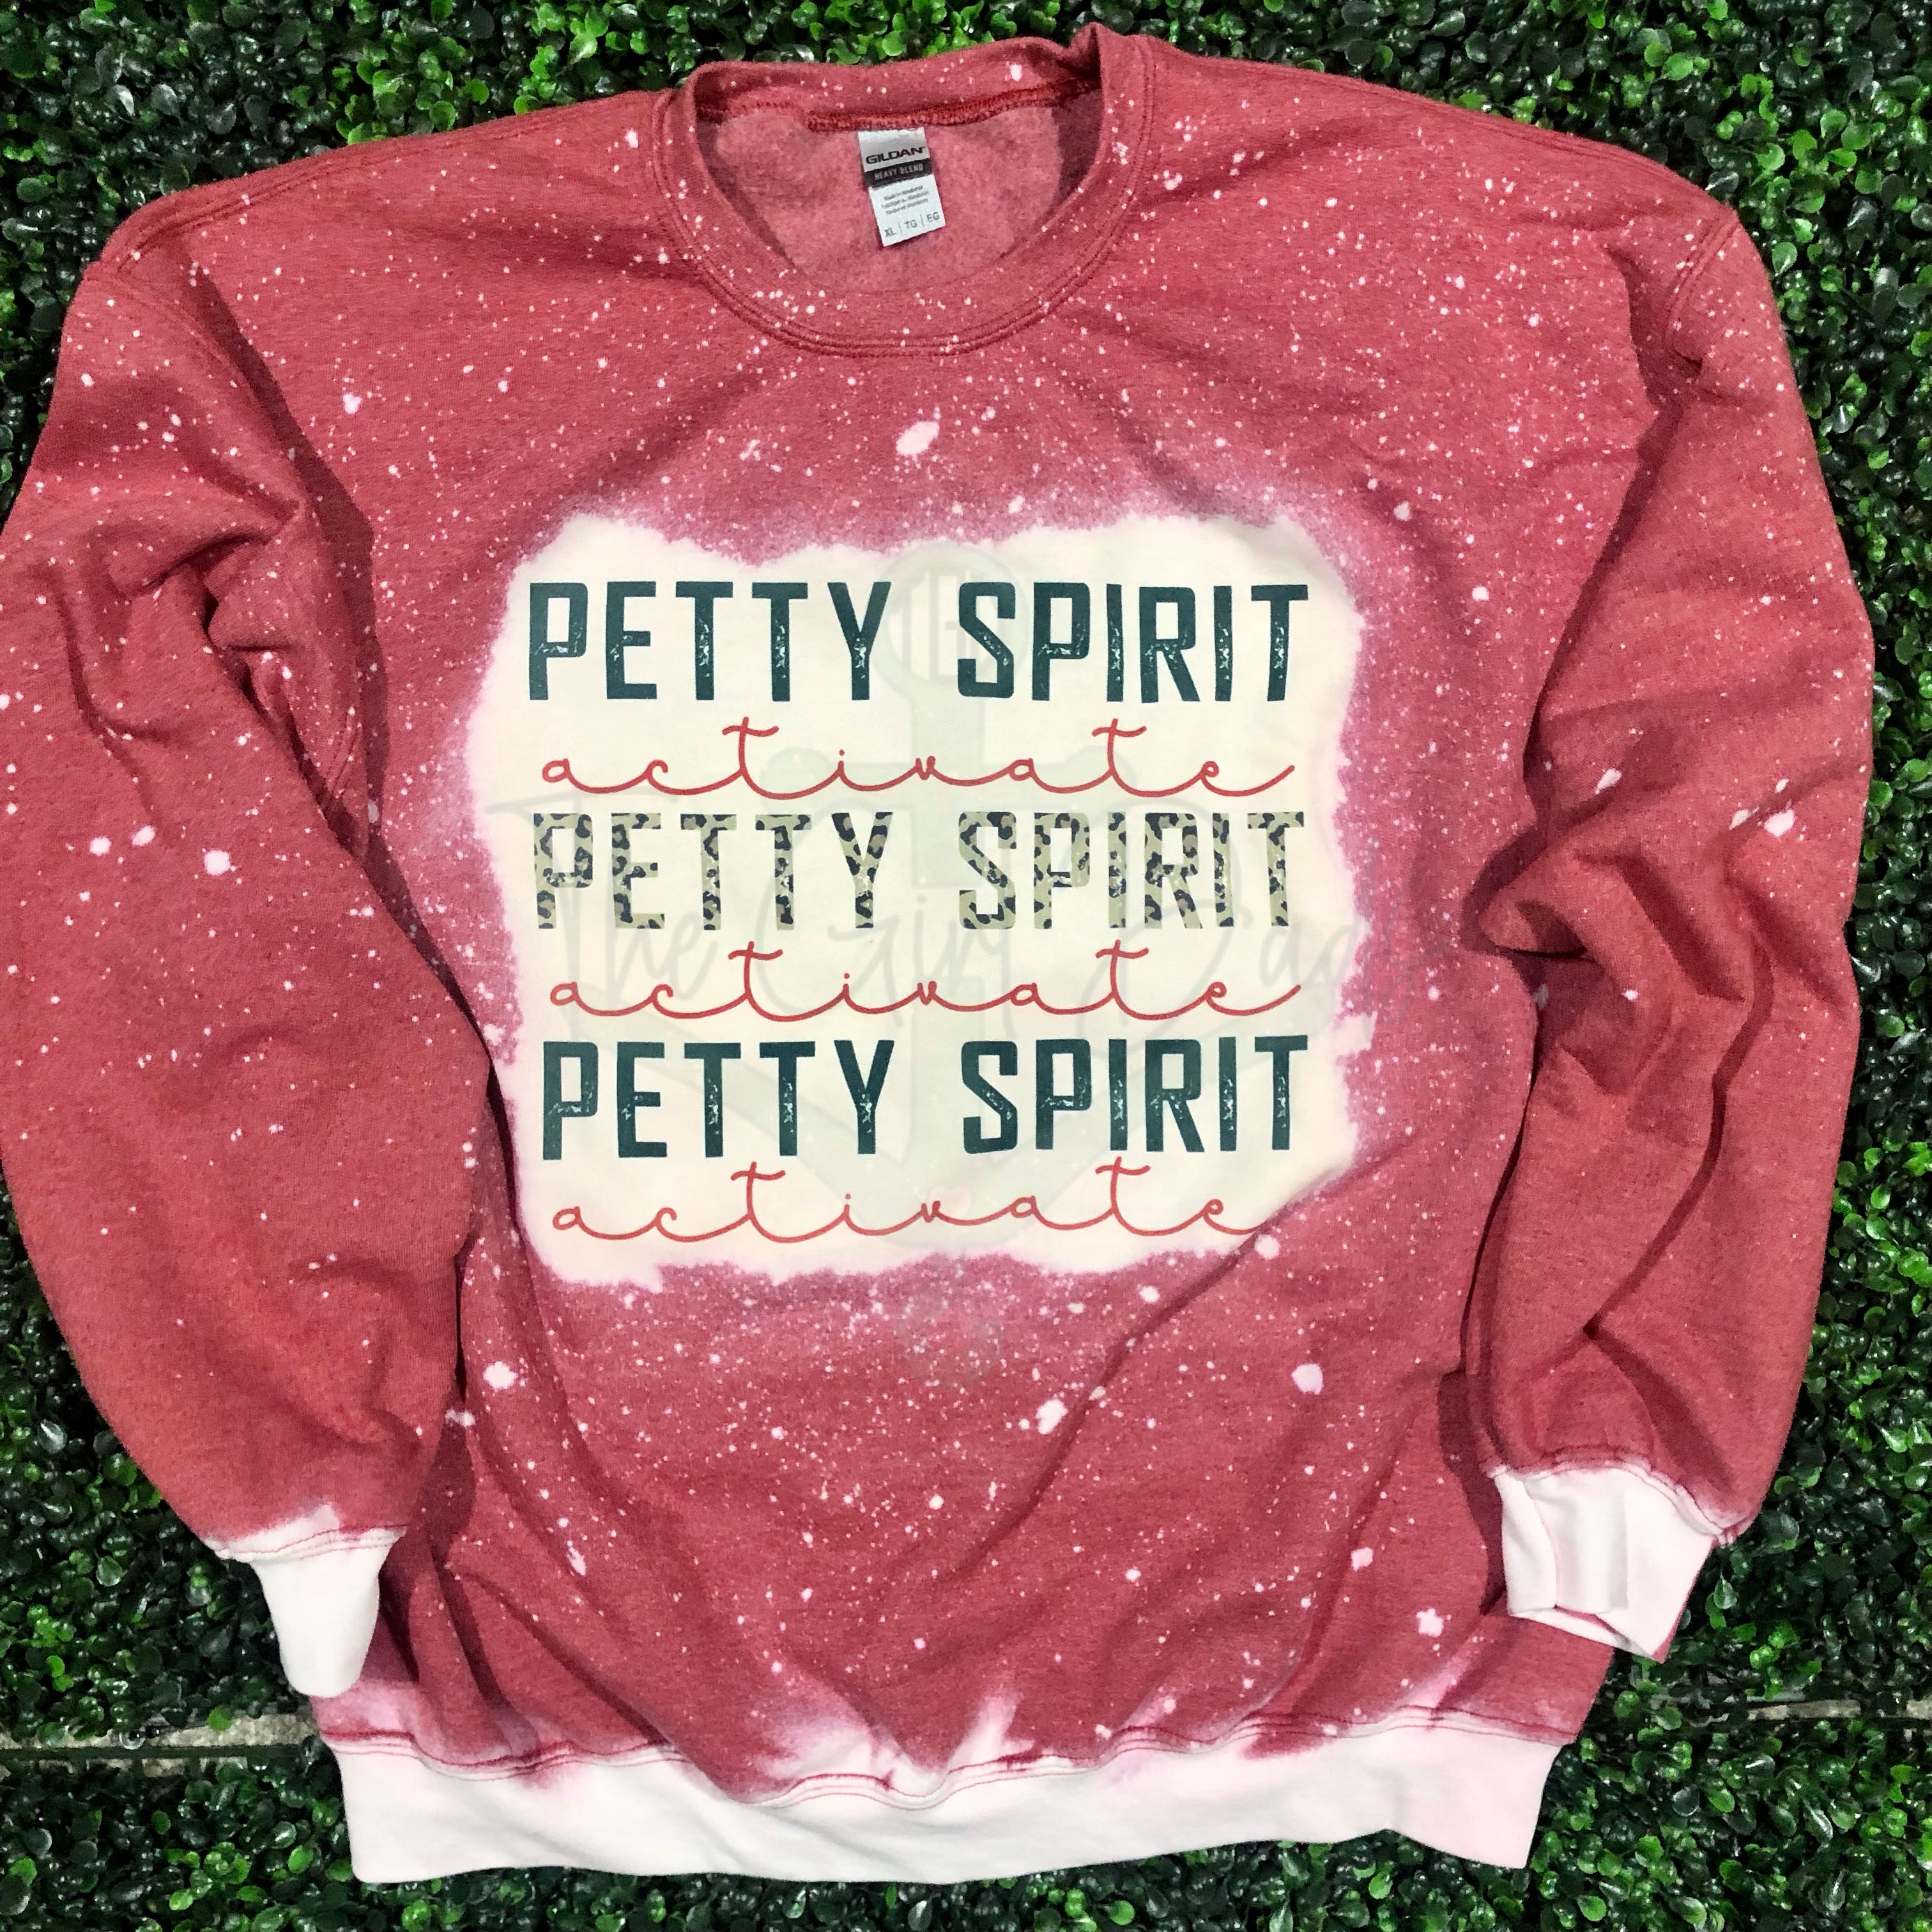 Petty Spirit Activate Top Design